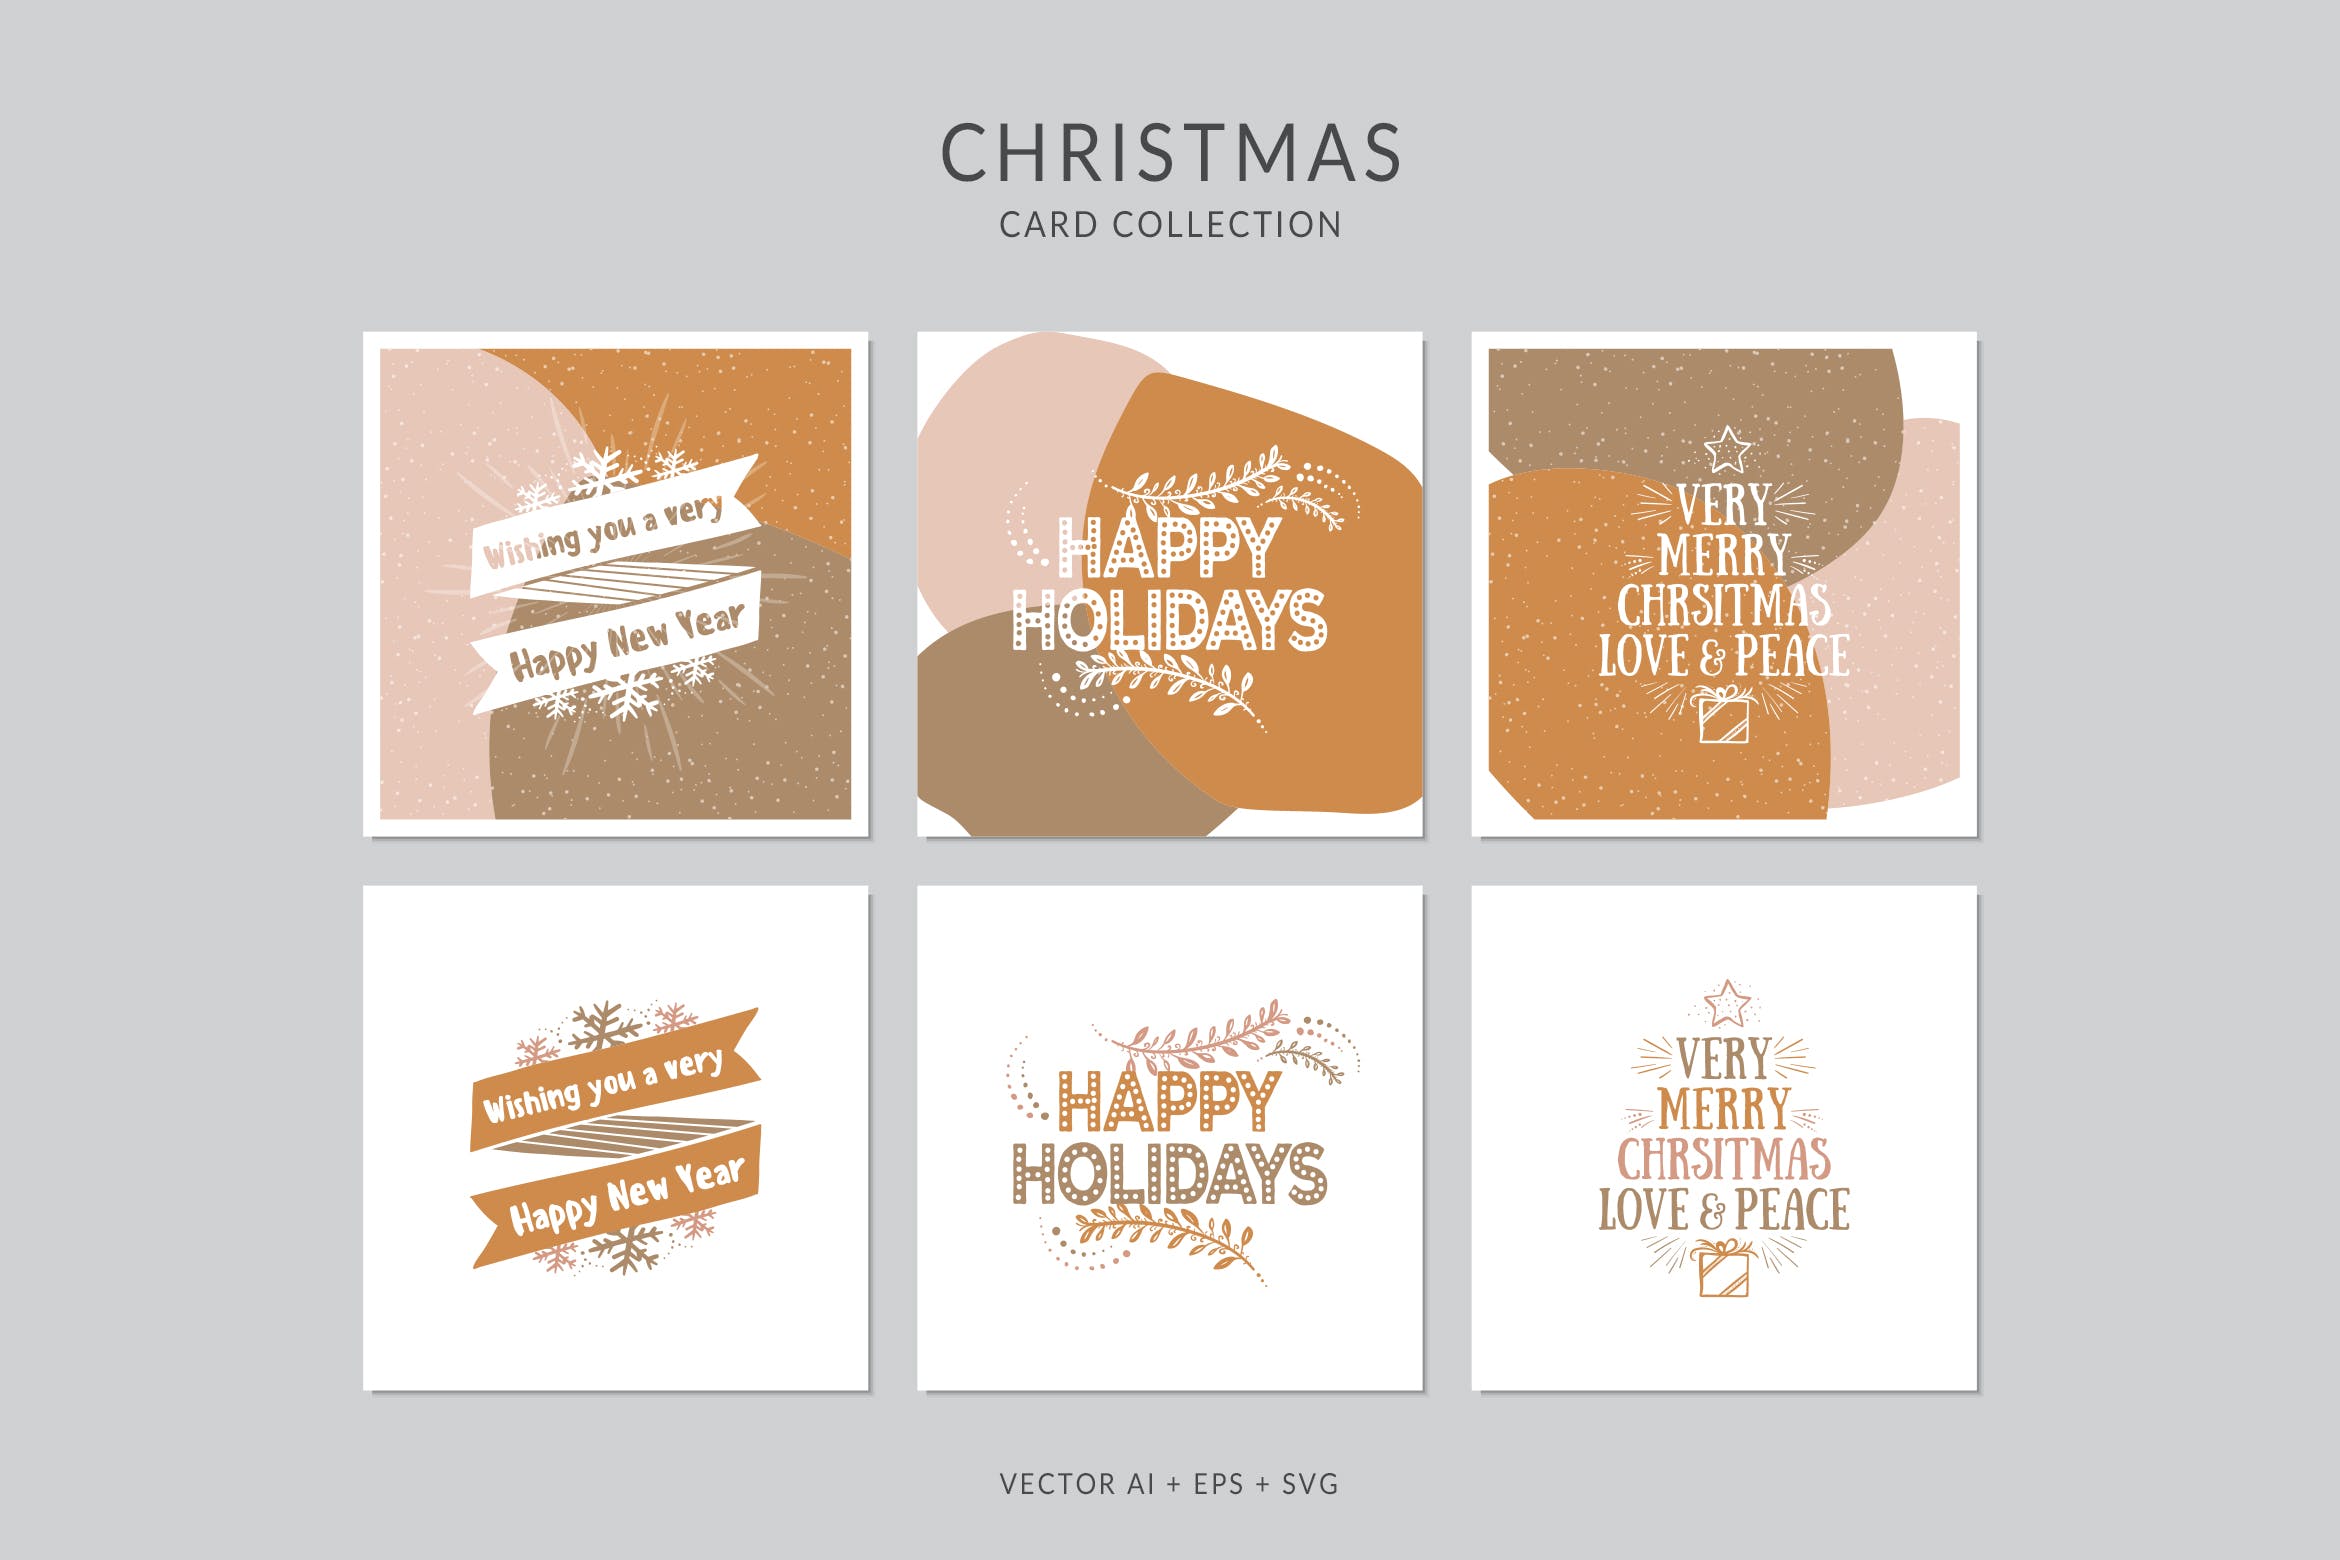 创意三色设计风格诞节贺卡矢量设计模板集v4 Christmas Greeting Card Vector Set插图